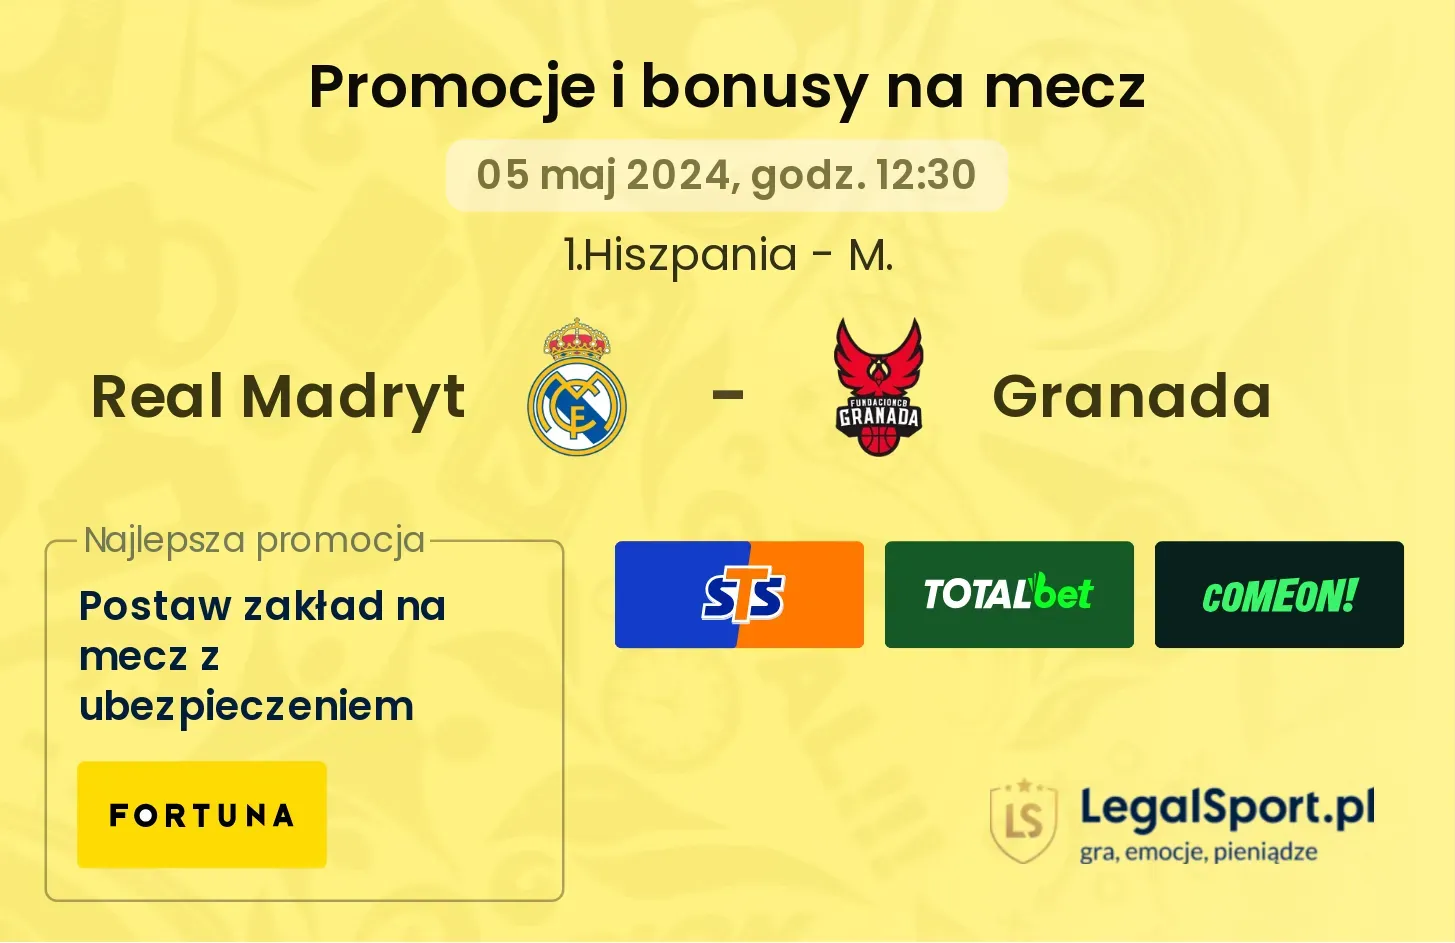 Real Madryt - Granada promocje bonusy na mecz